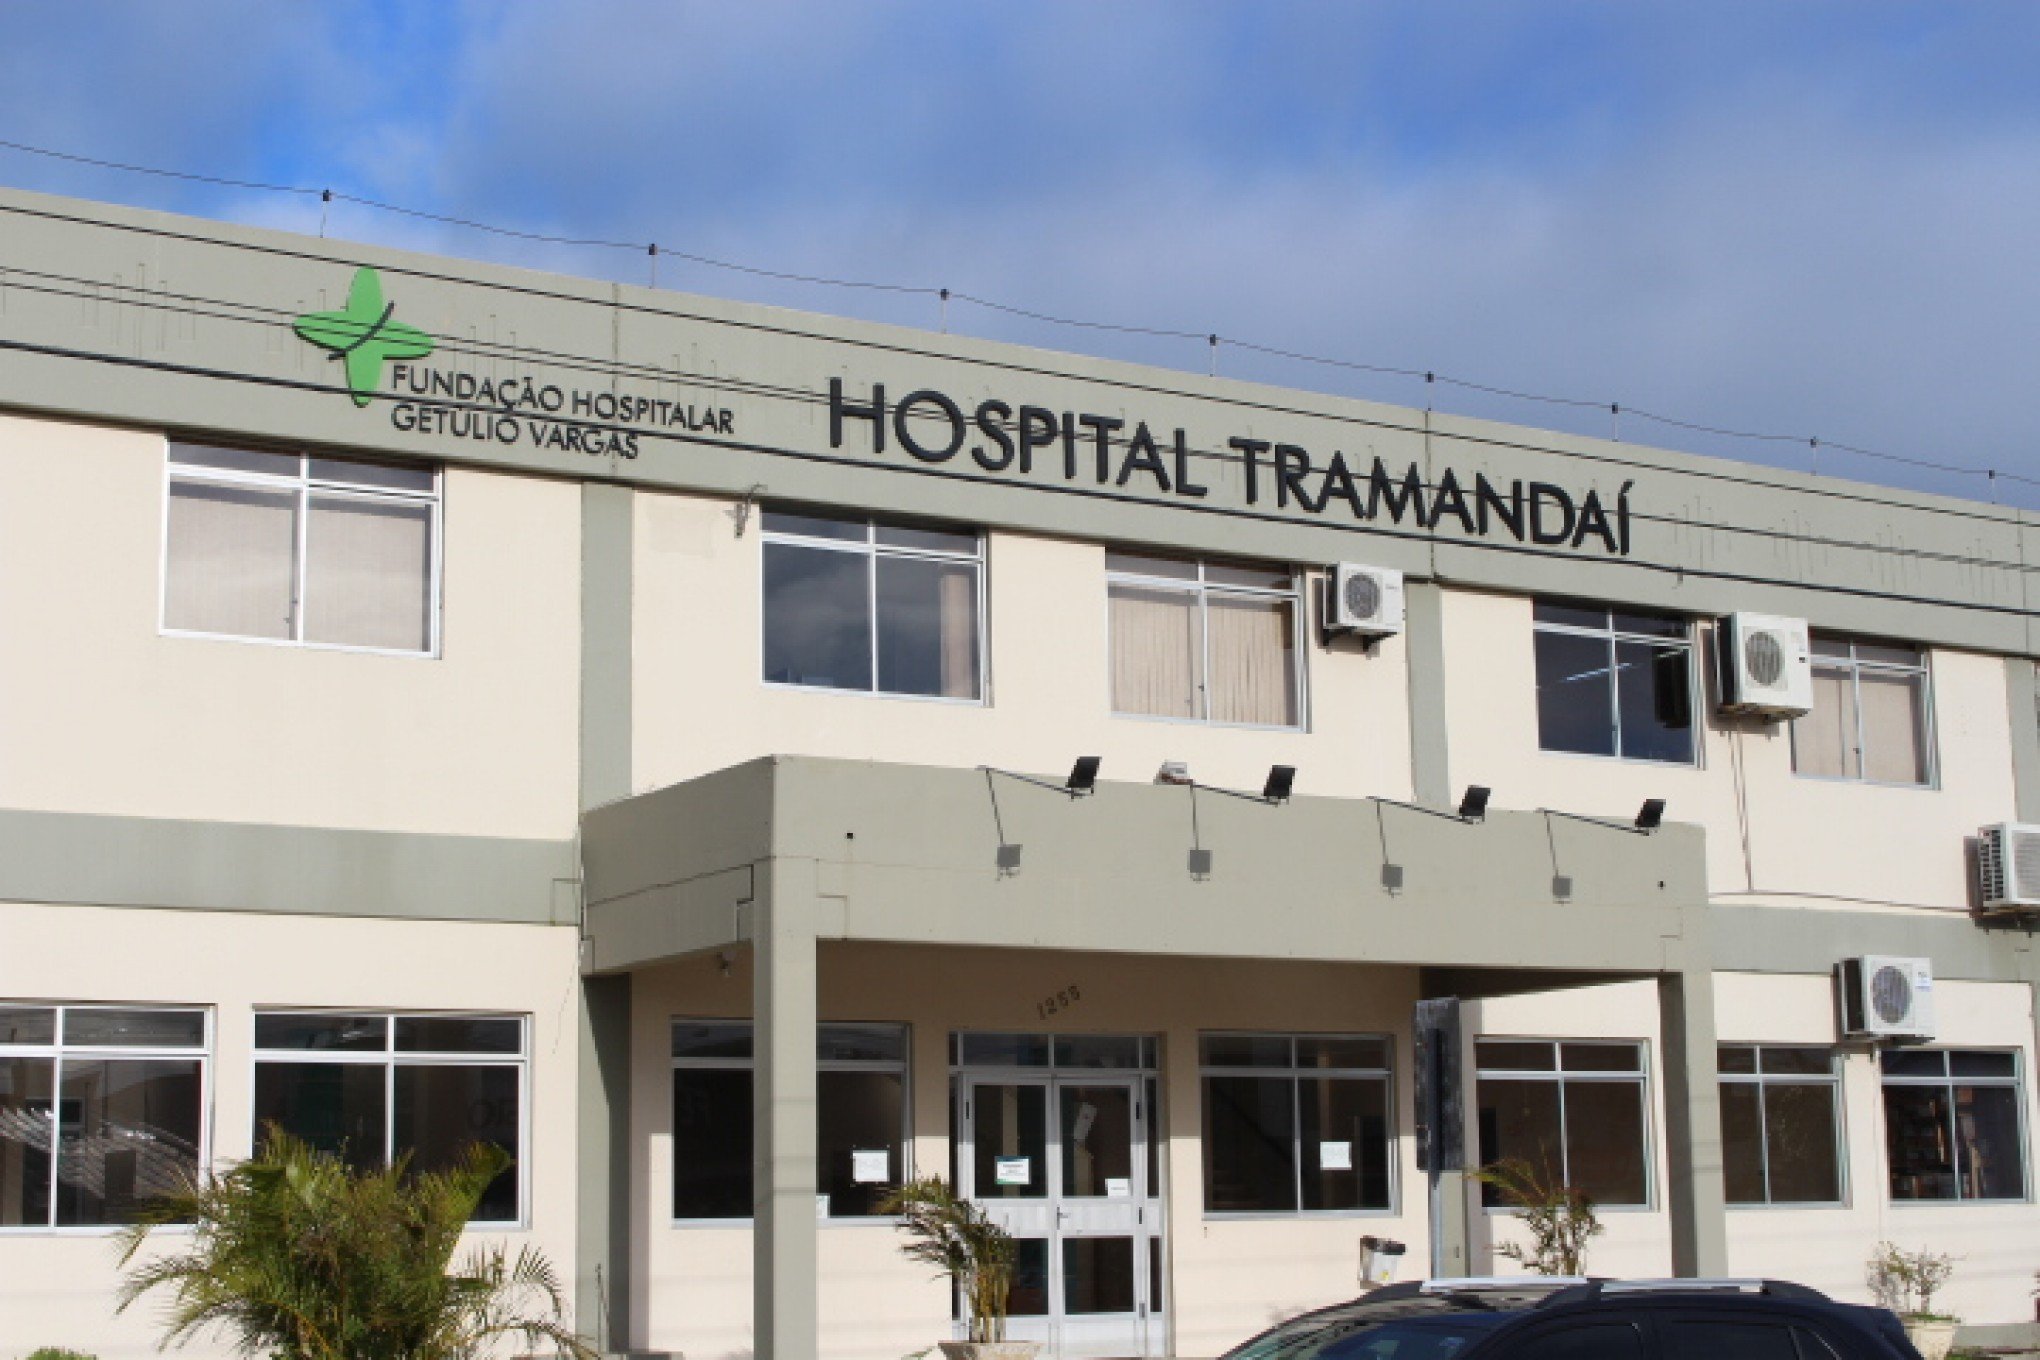 Atendimentos a gestantes são suspensos no Hospital Tramandaí; veja o que diz o responsável pela instituição